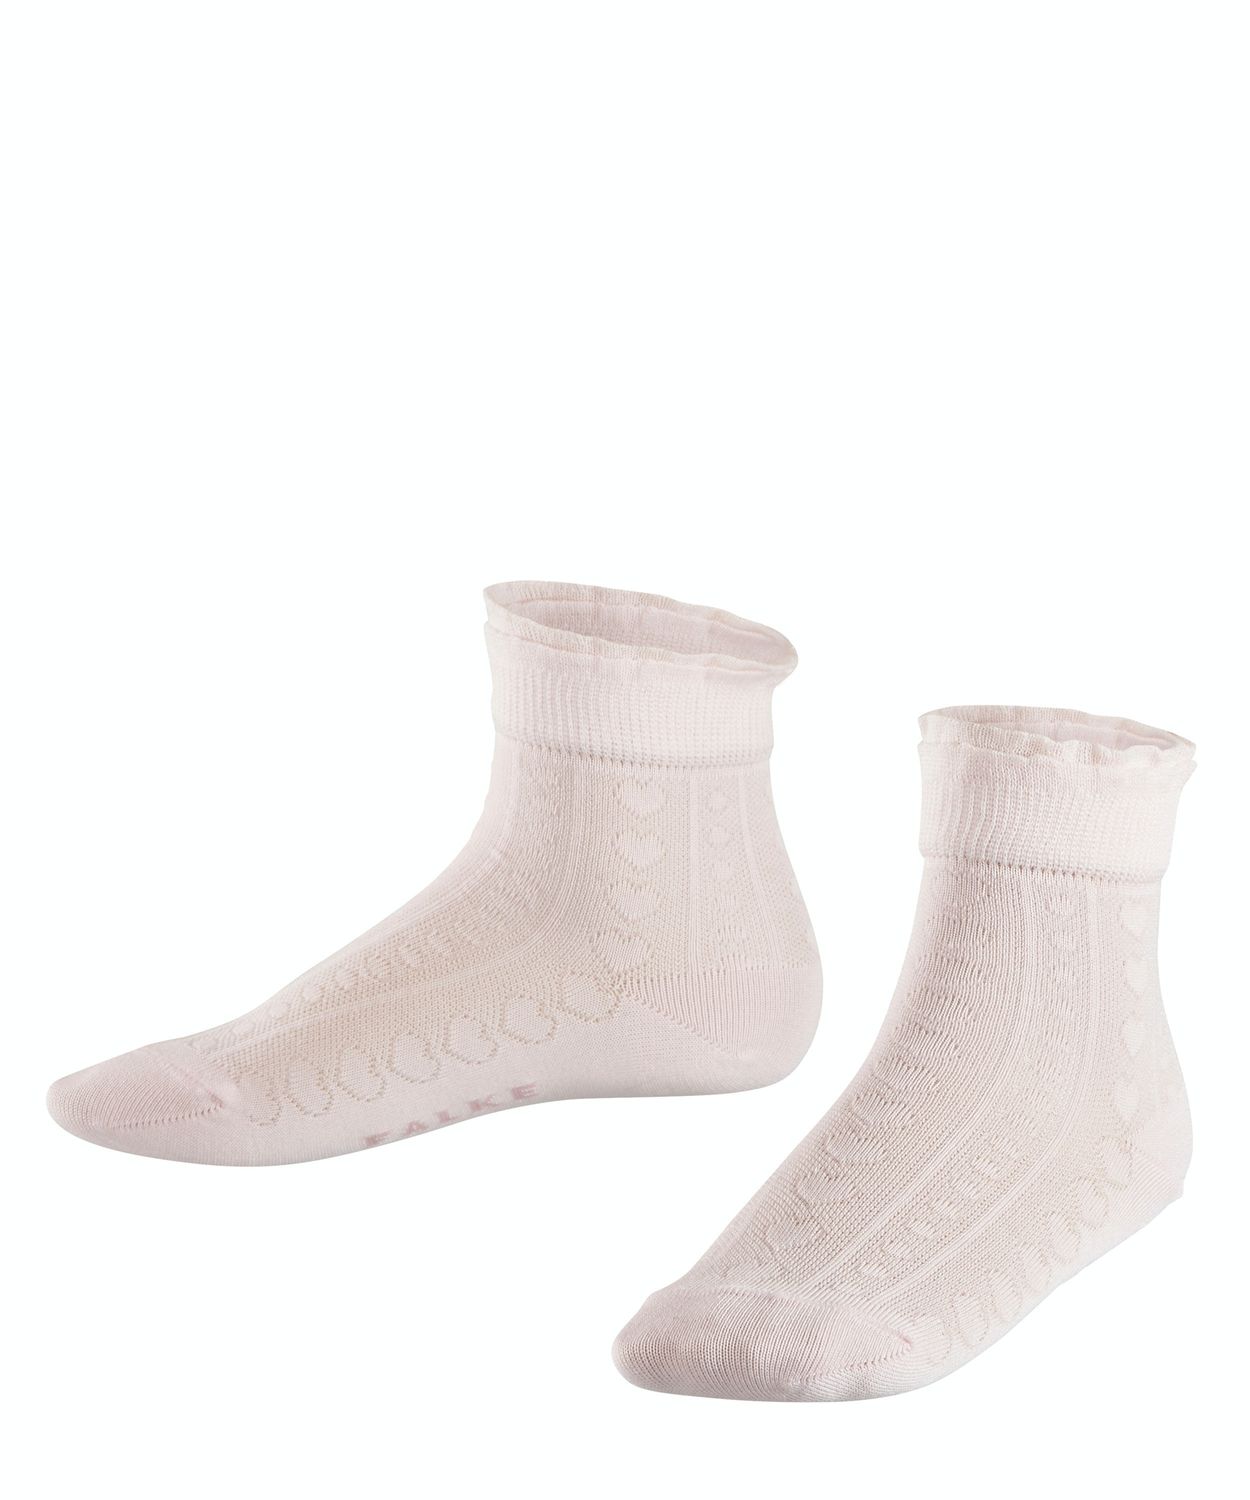 Falke Kinder Socken Romantic Net Hersteller: Falke Bestellnummer:4043874333313